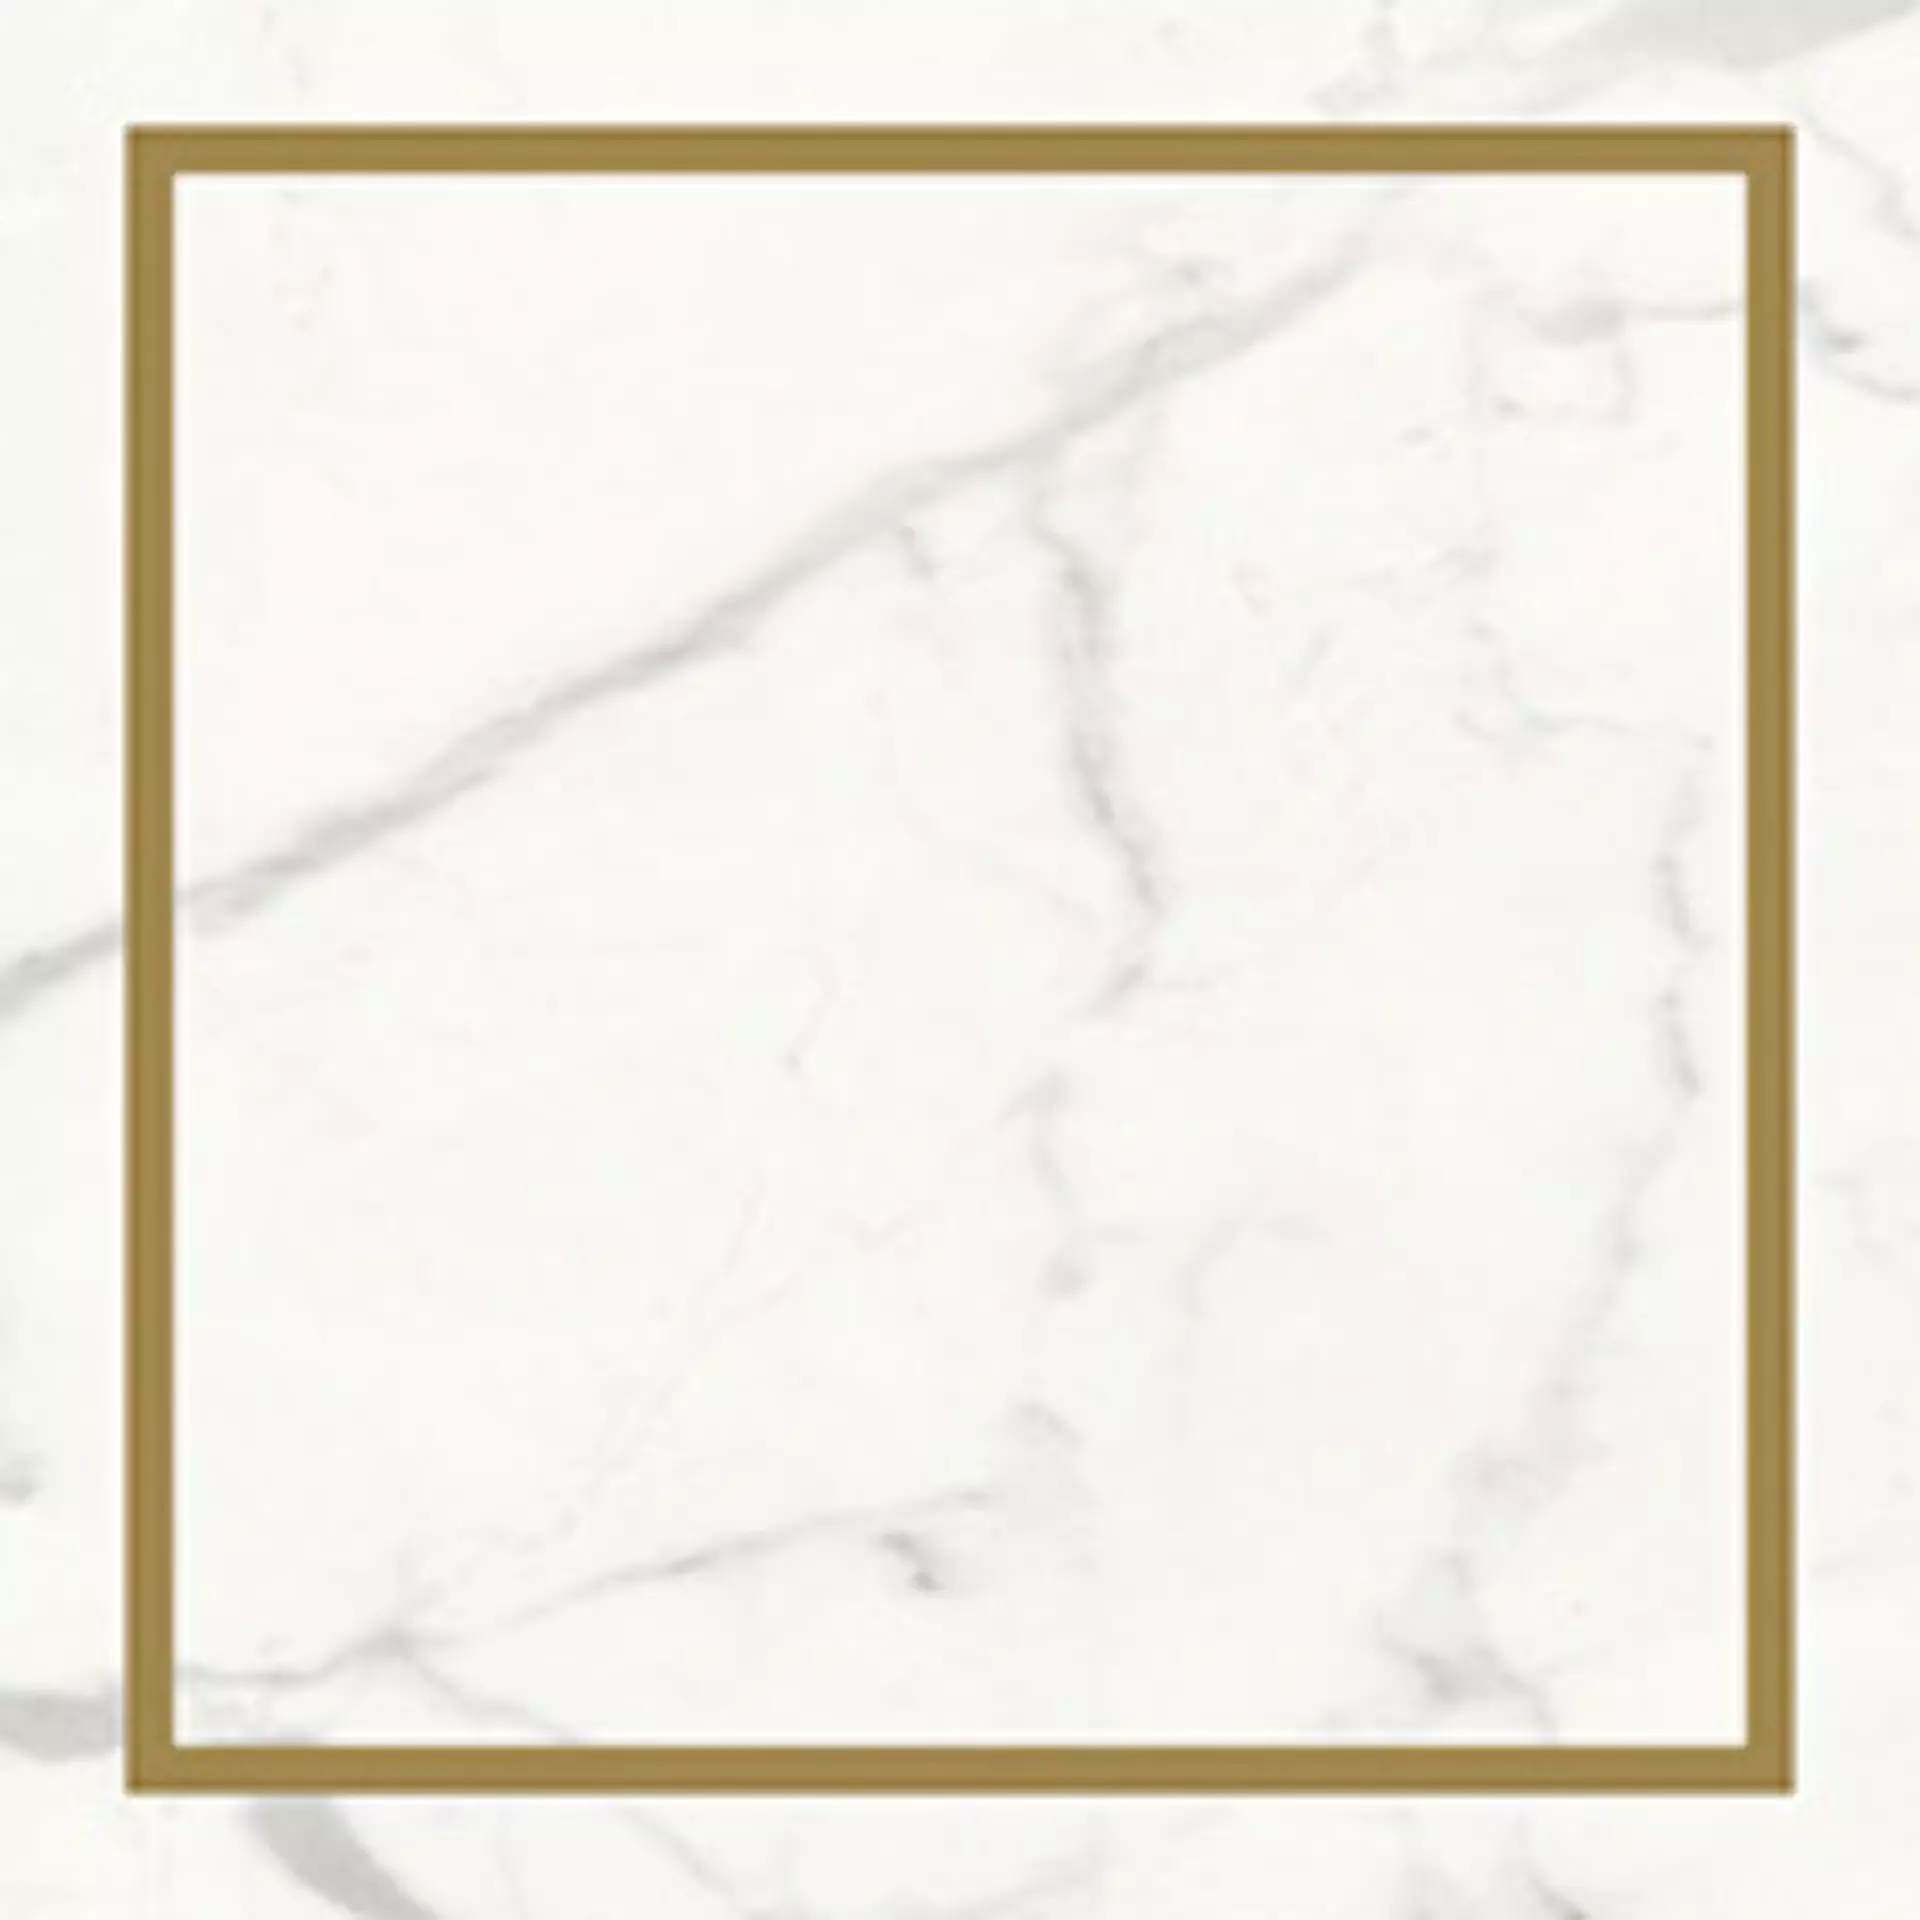 Wandfliese Villeroy & Boch Victorian White - Gold Glossy White - Gold 1222-MK0I glaenzend 20x20cm Dekor Single rektifiziert 10mm